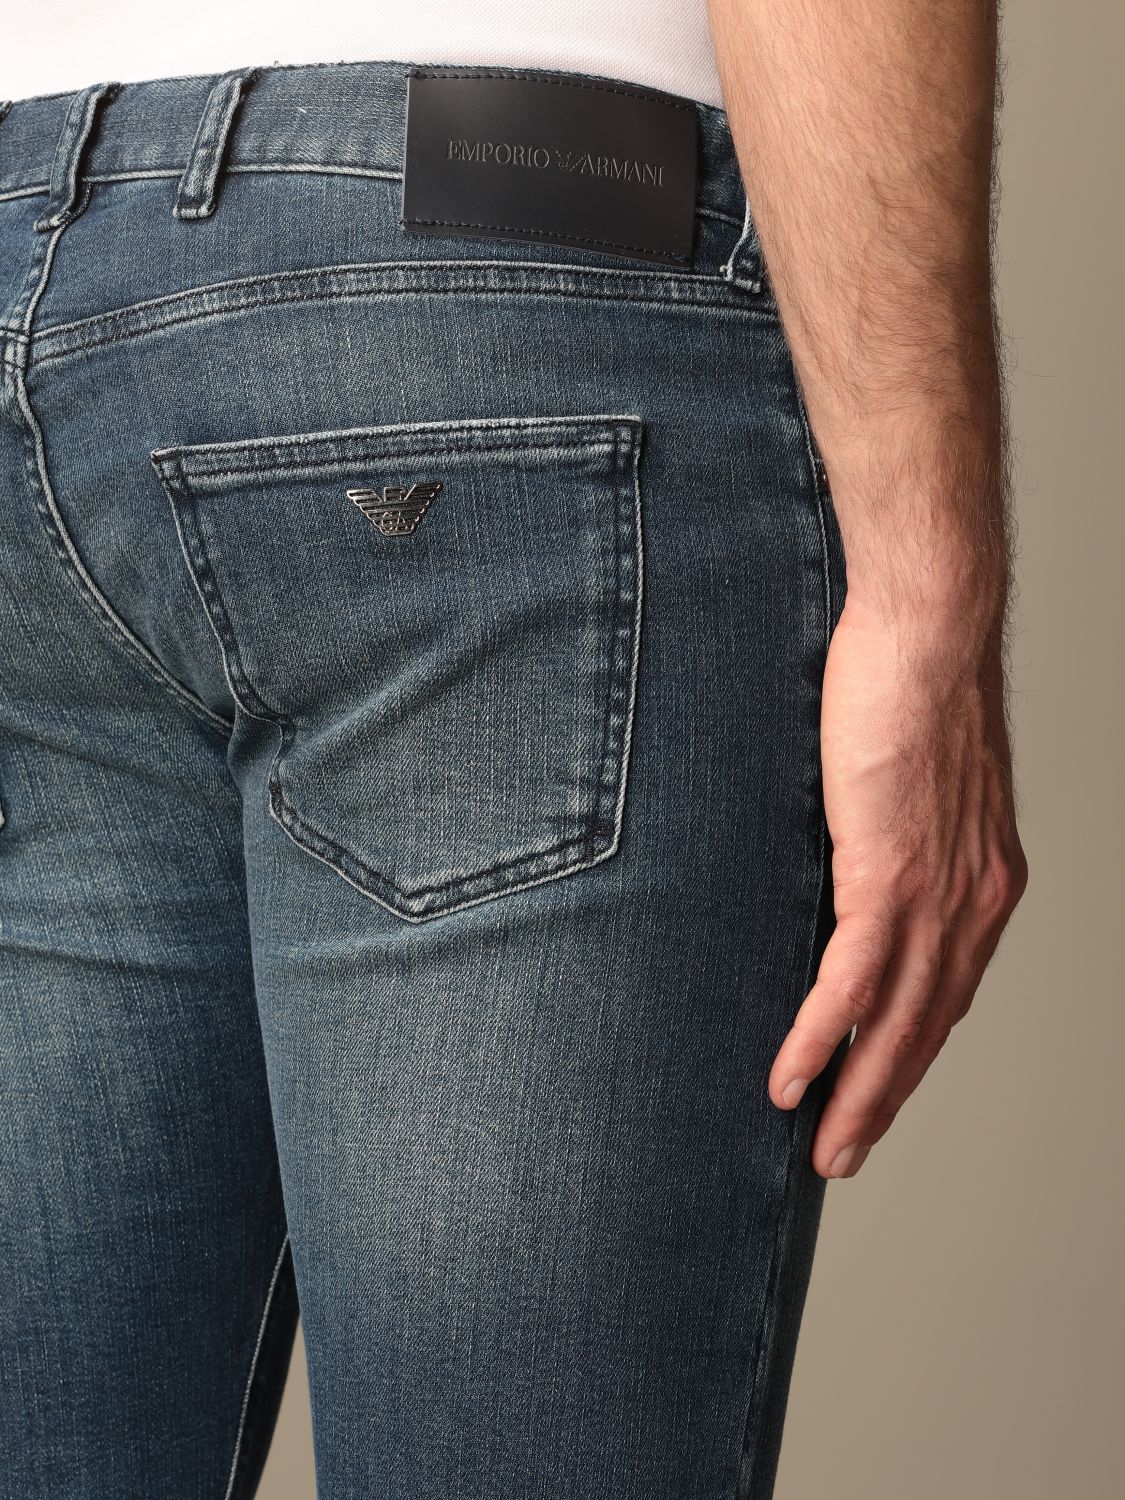 EMPORIO ARMANI: jeans in washed denim - Denim | Emporio Armani jeans ...